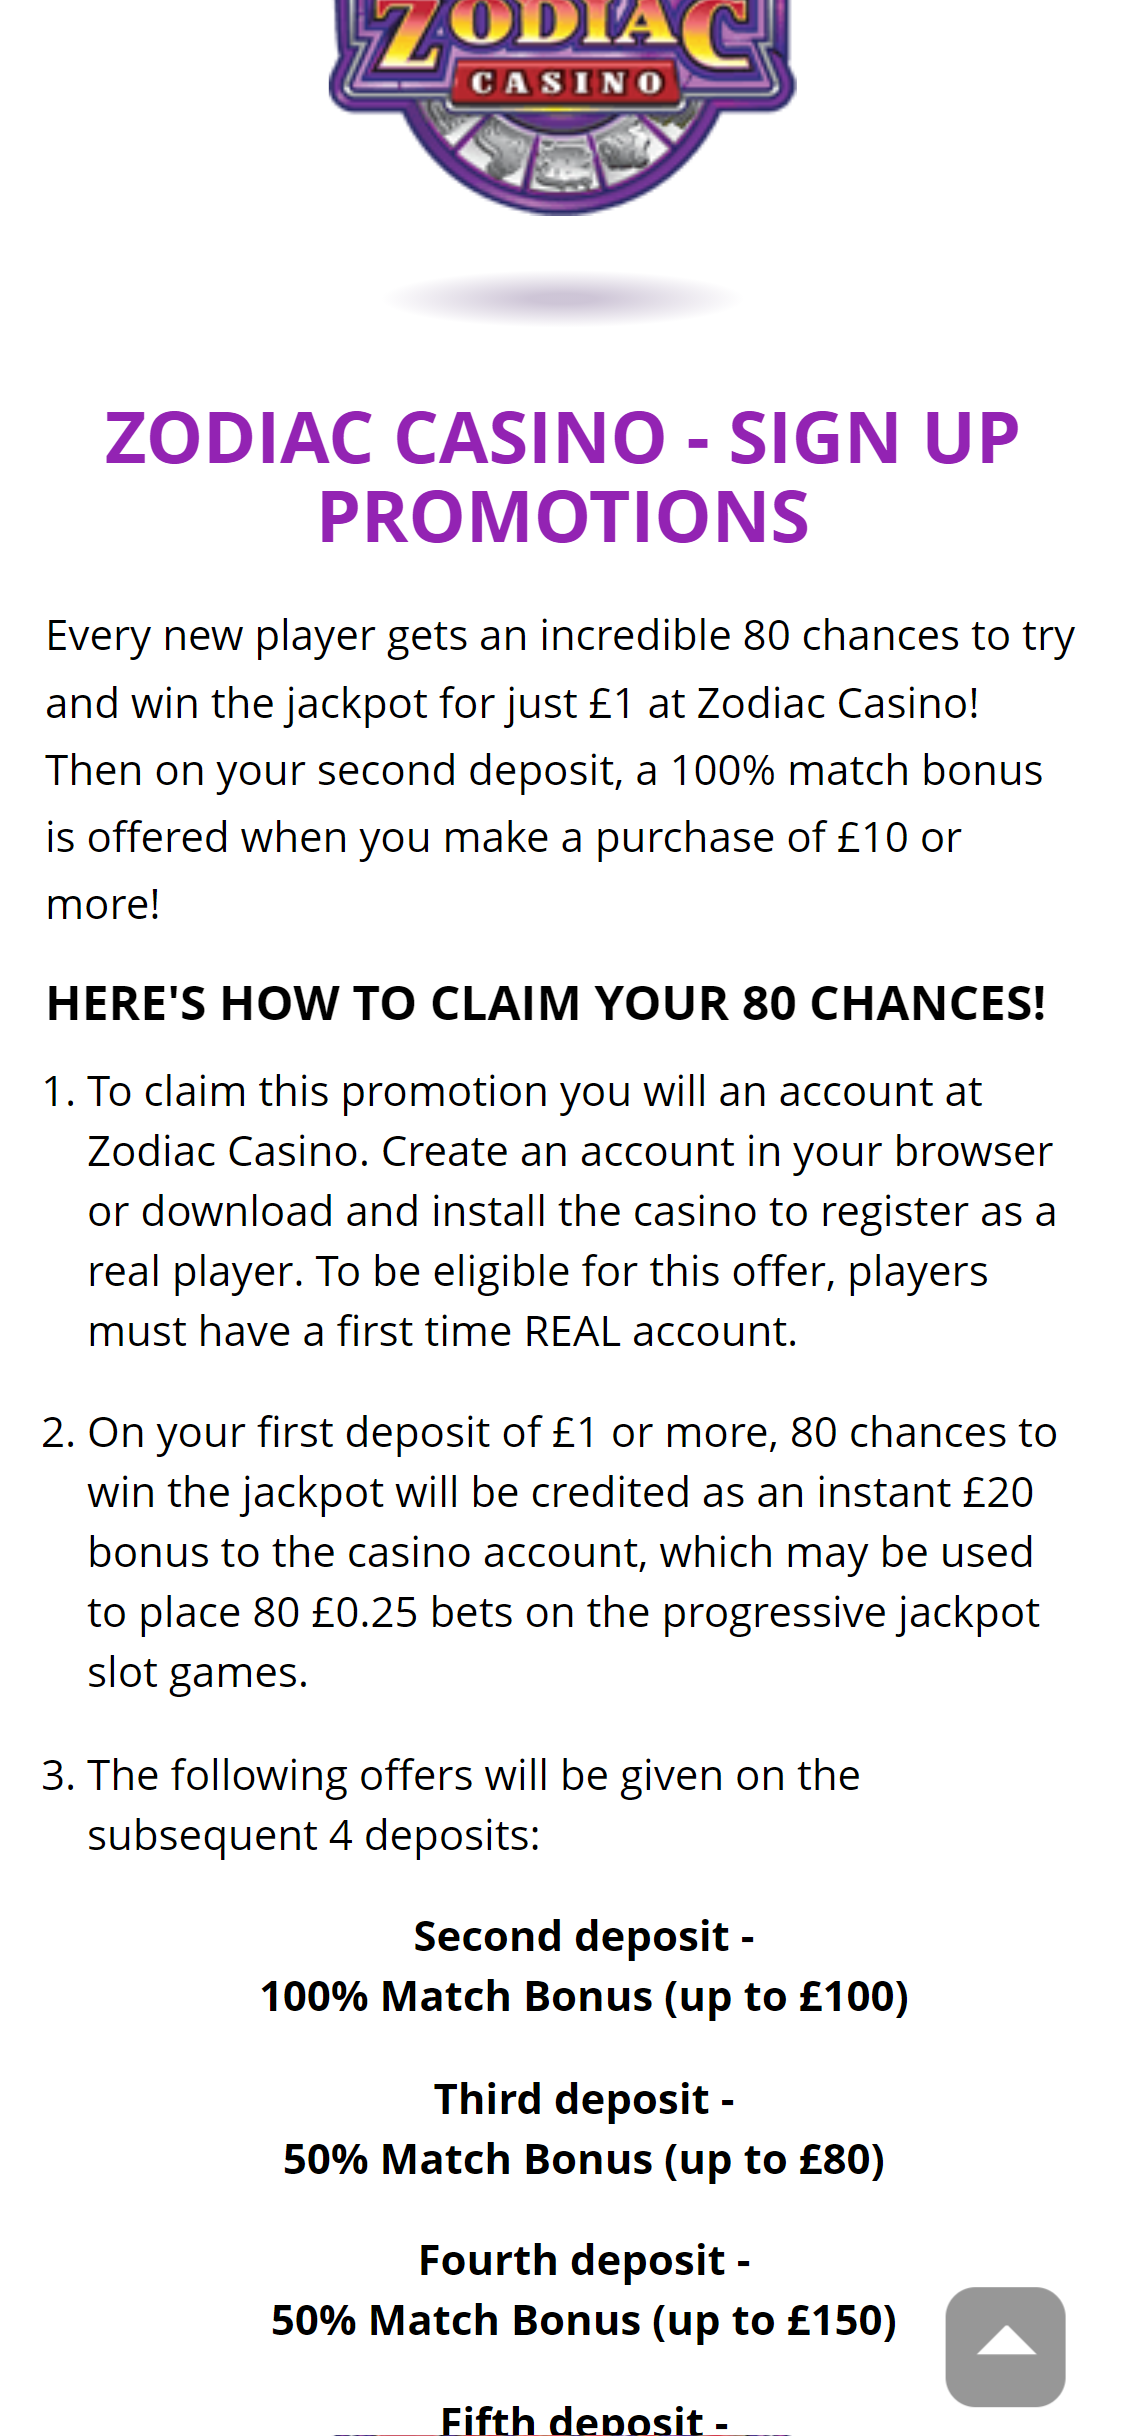 Zodiac Casino Mobile No Deposit Bonus Review